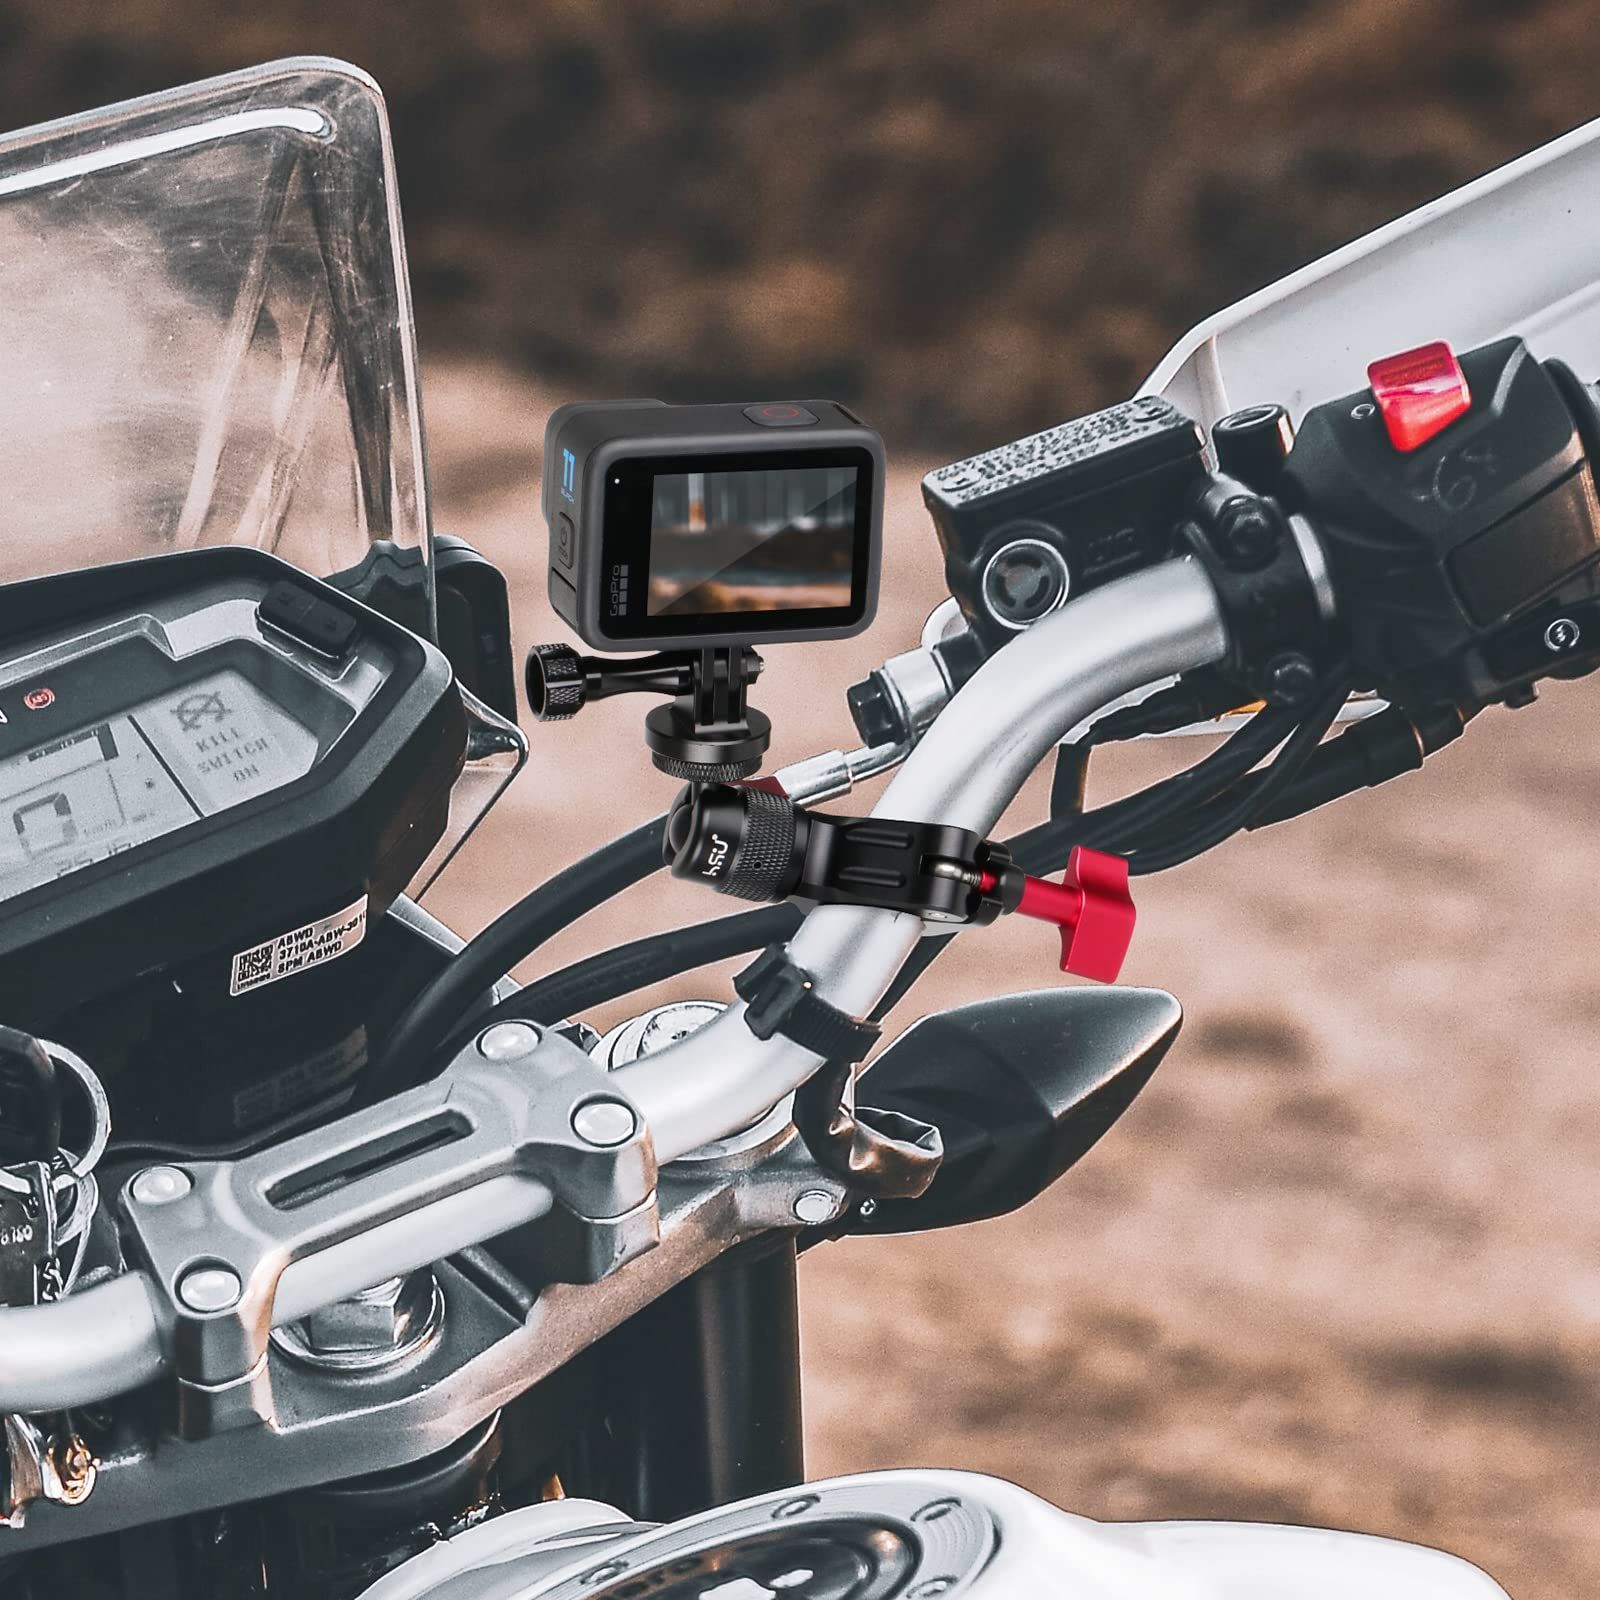 国内即発送 HSU バイク・自転車 ハンドルマウント アルミ製カメラホルダー 直径8mm-3 5546.48円 カメラ 